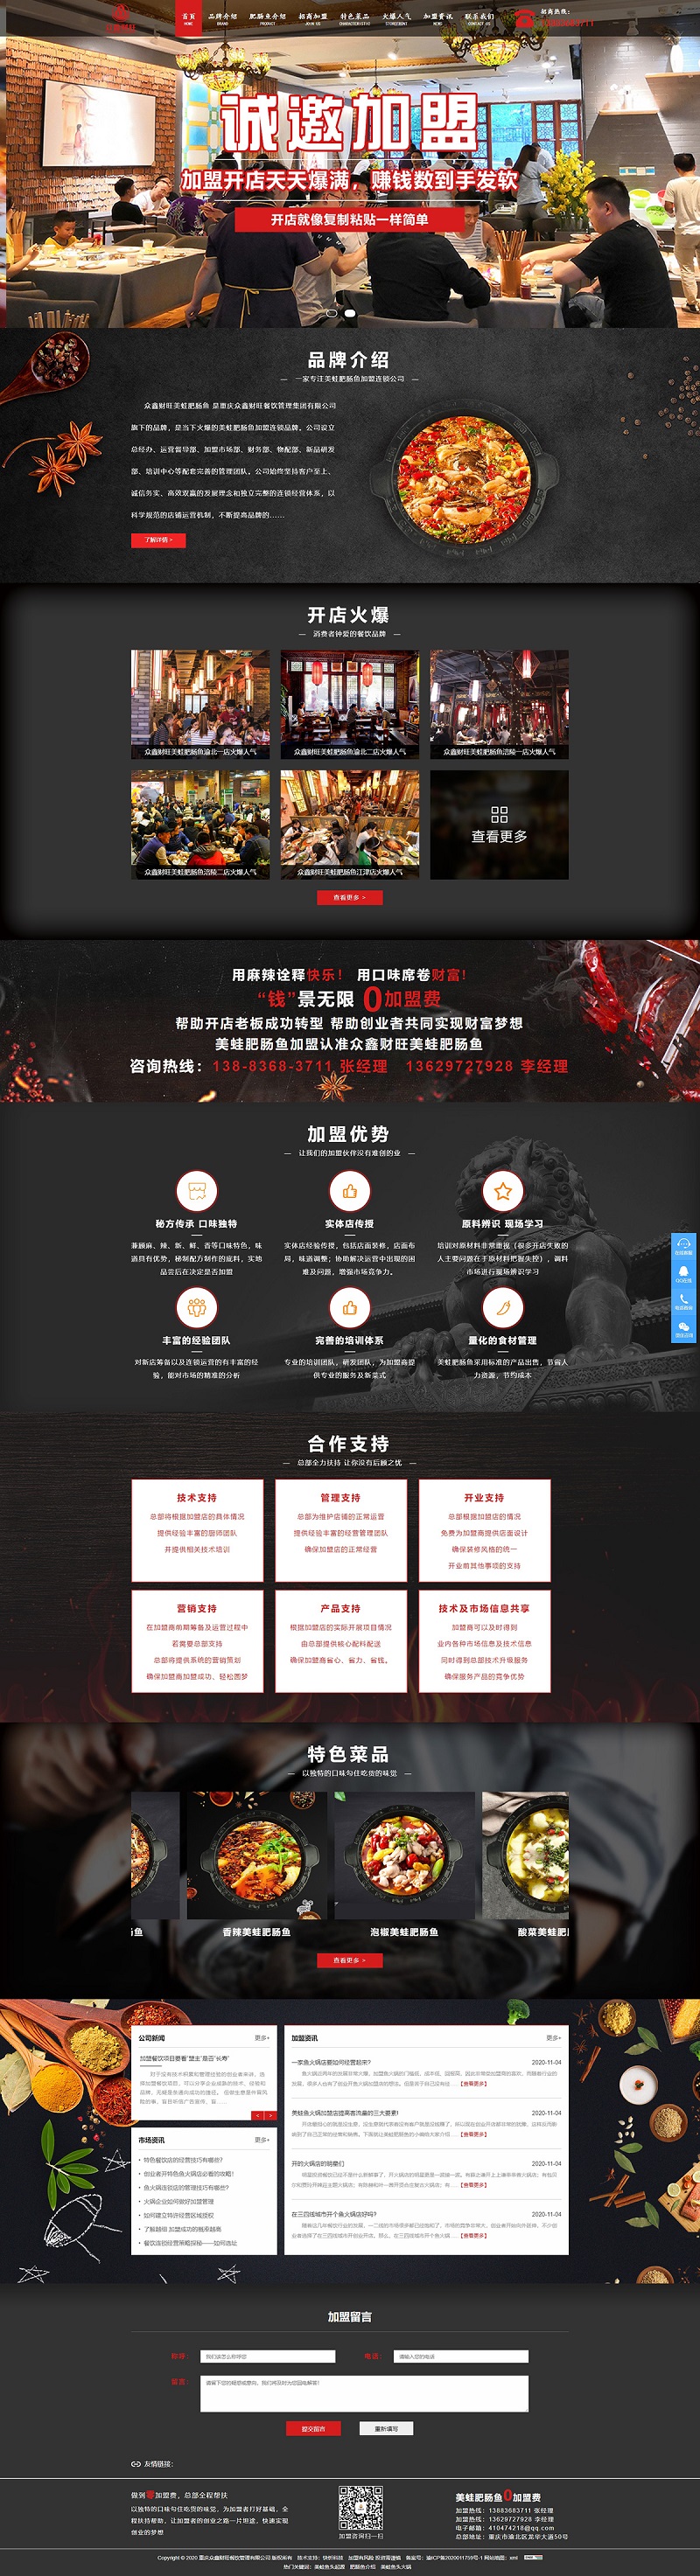 众鑫财旺餐饮管理集团有限公司网站建设案例